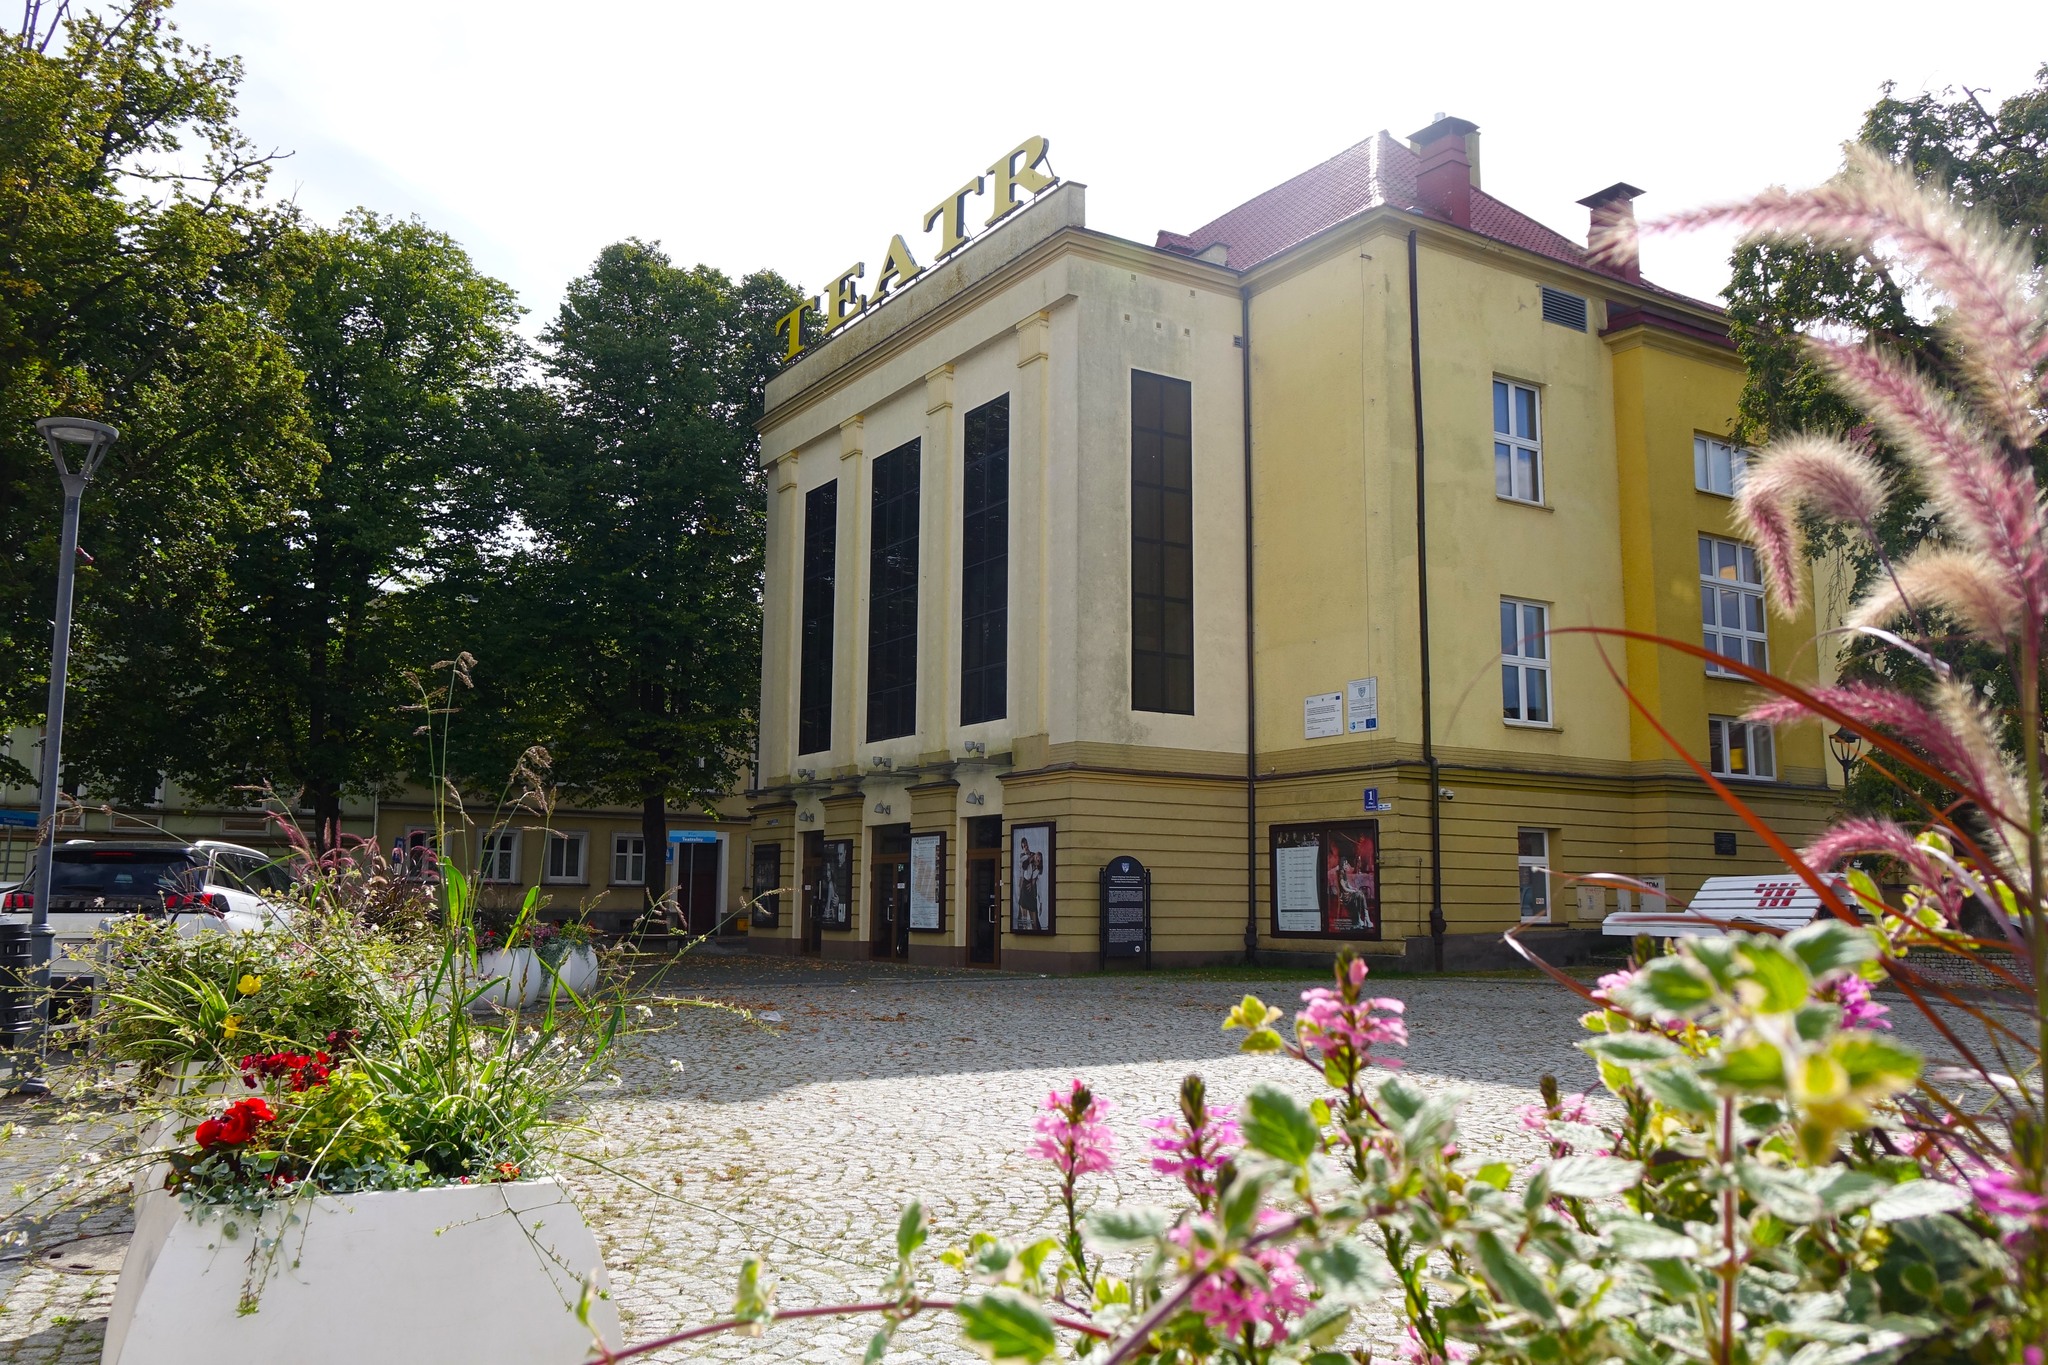 Bałtycki Teatr Dramatyczny im. J. Słowackiego